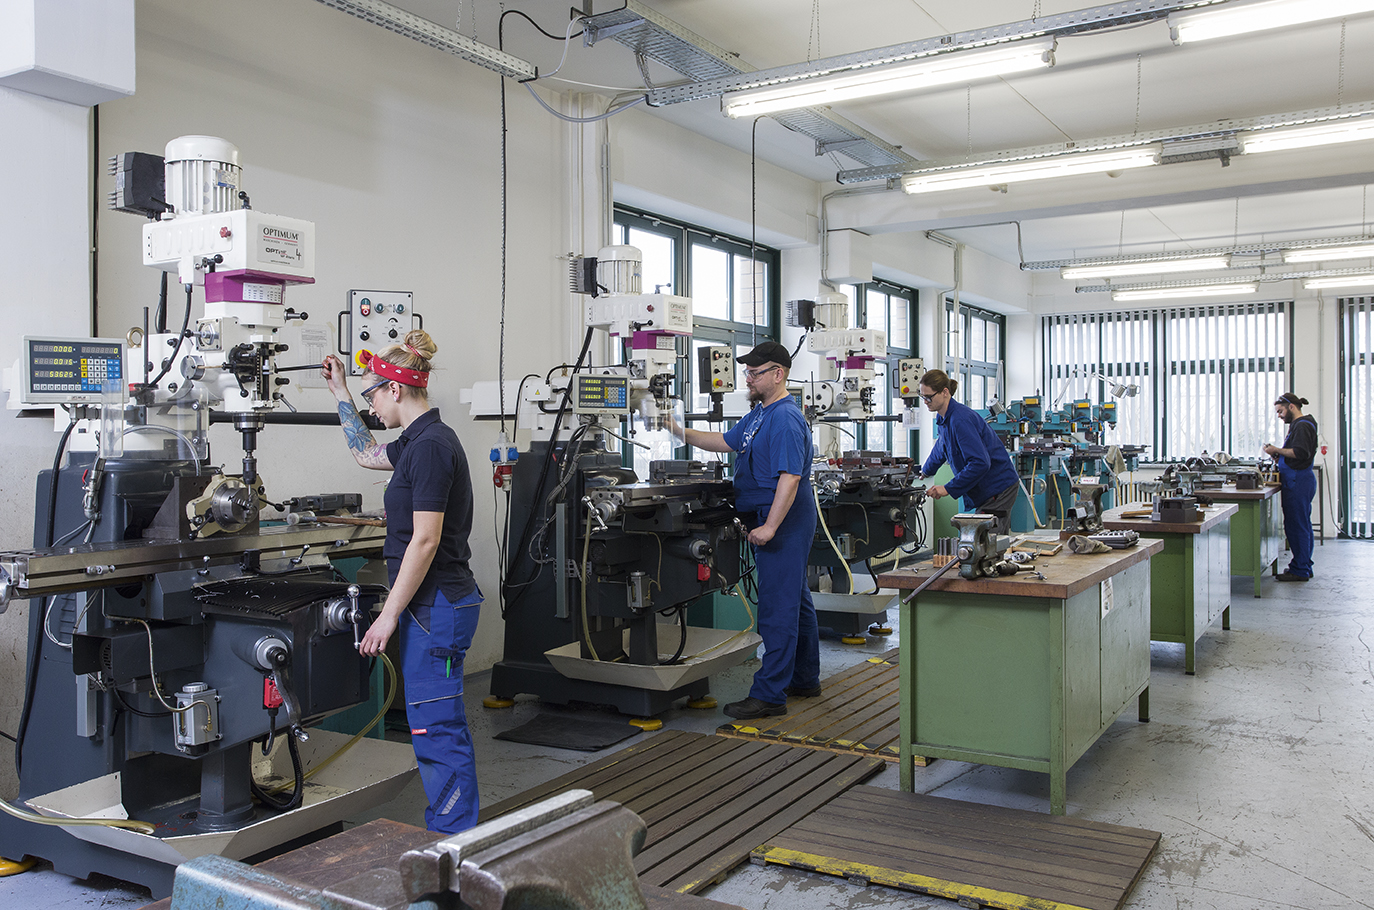 Im Standort Wolfener Strasse finden sie zahlreiche Werkstätten für die Qualifizierungsbereiche Metall- und Holzbearbeitung und die Malerausbildung.